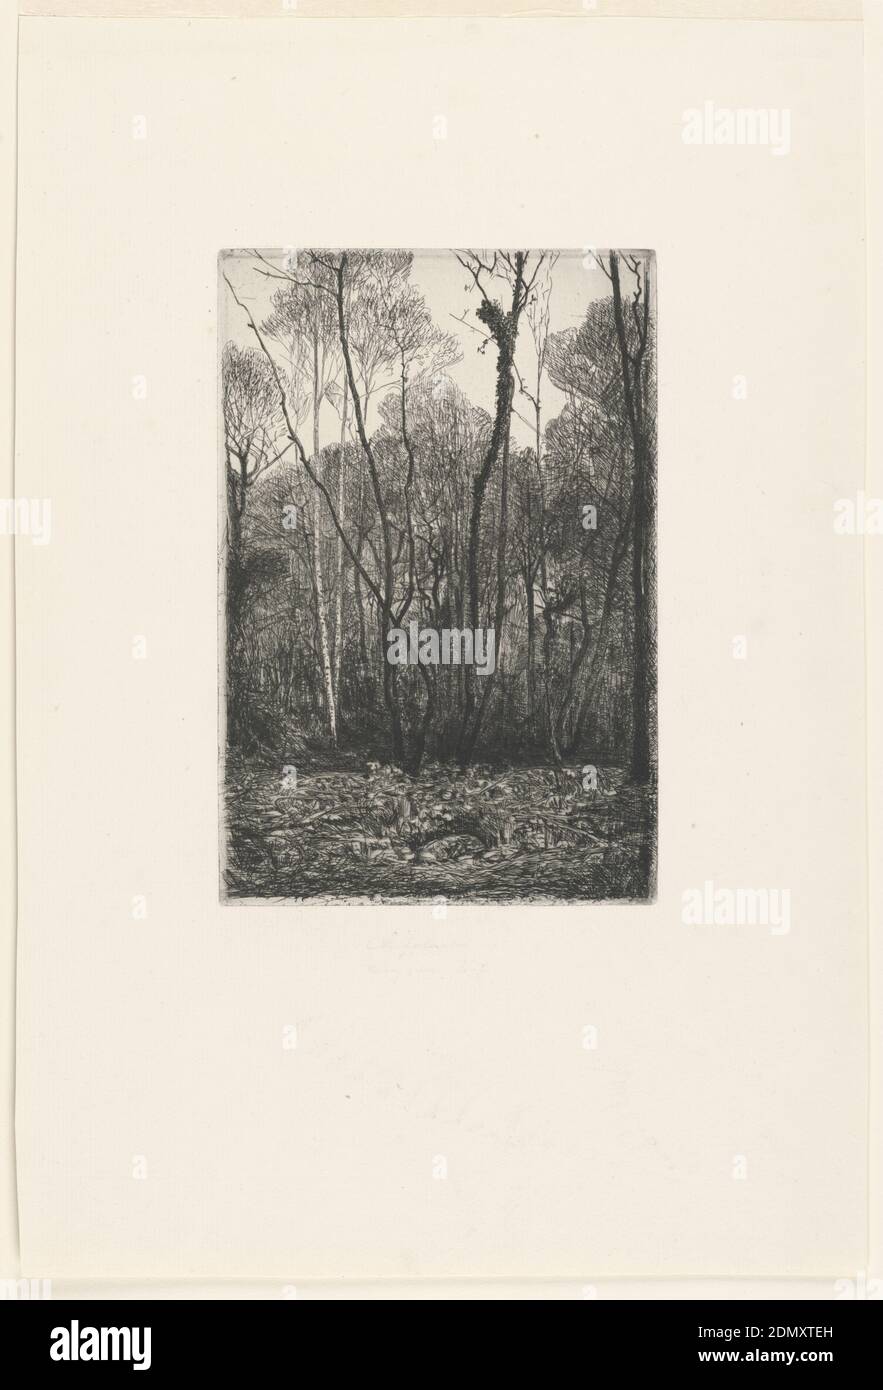 Paisaje con árboles, François-Nicolas Chifflart, francés, 1825 - 1901, grabado en tinta negra sobre papel blanco, Francia, ca. 1860, impresión Foto de stock